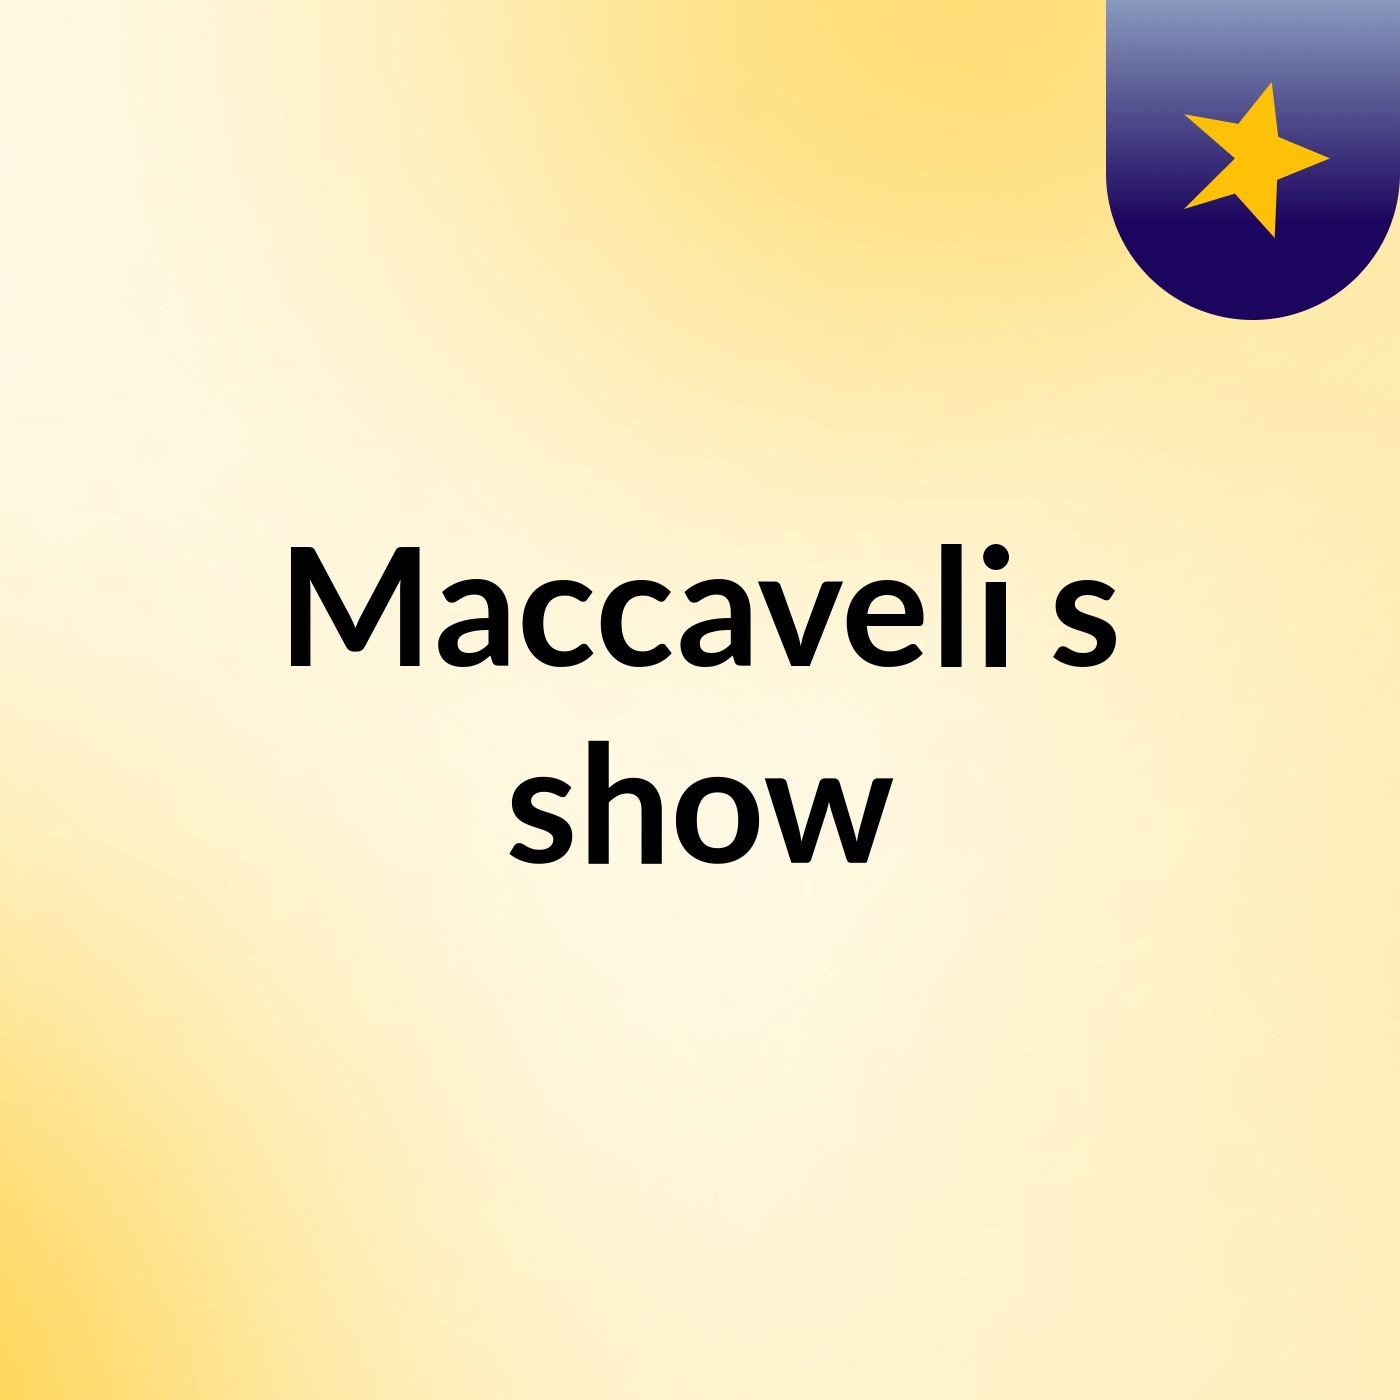 Maccaveli's show